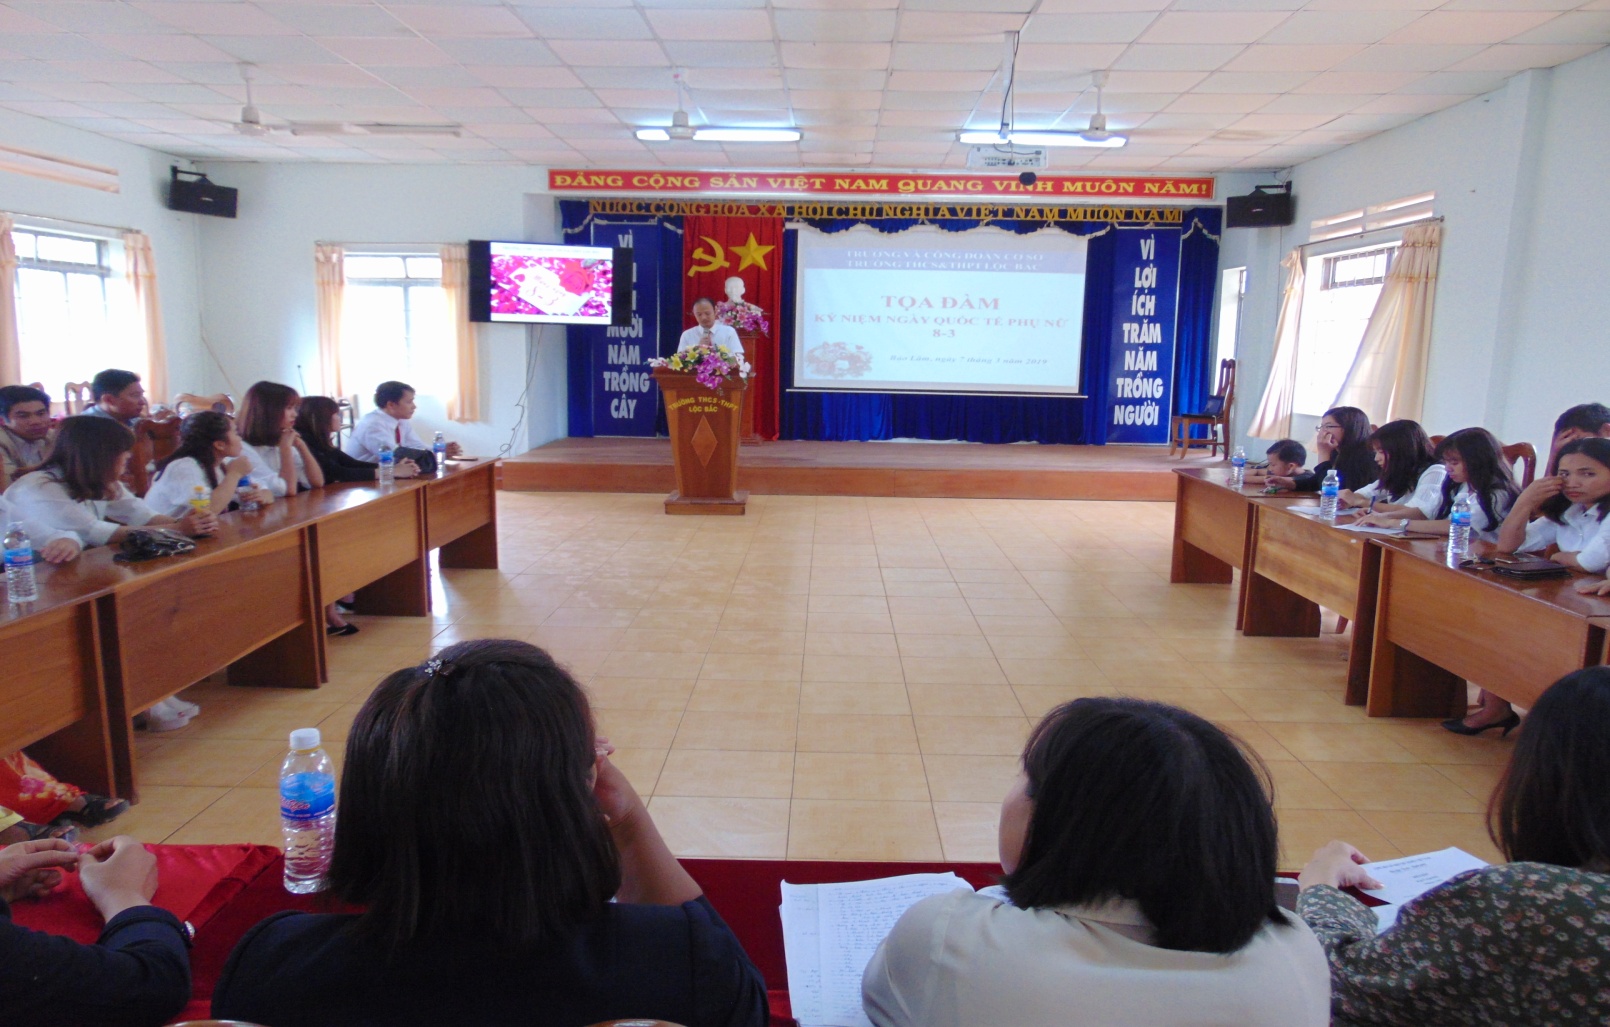 Nhà trường, công đoàn trường THCS&THPT Lộc Bắc tổ chức chương trình tọa đàm kỉ niệm ngày Quốc tế phụ nữ (8/3/1910 - 8/3/2019)